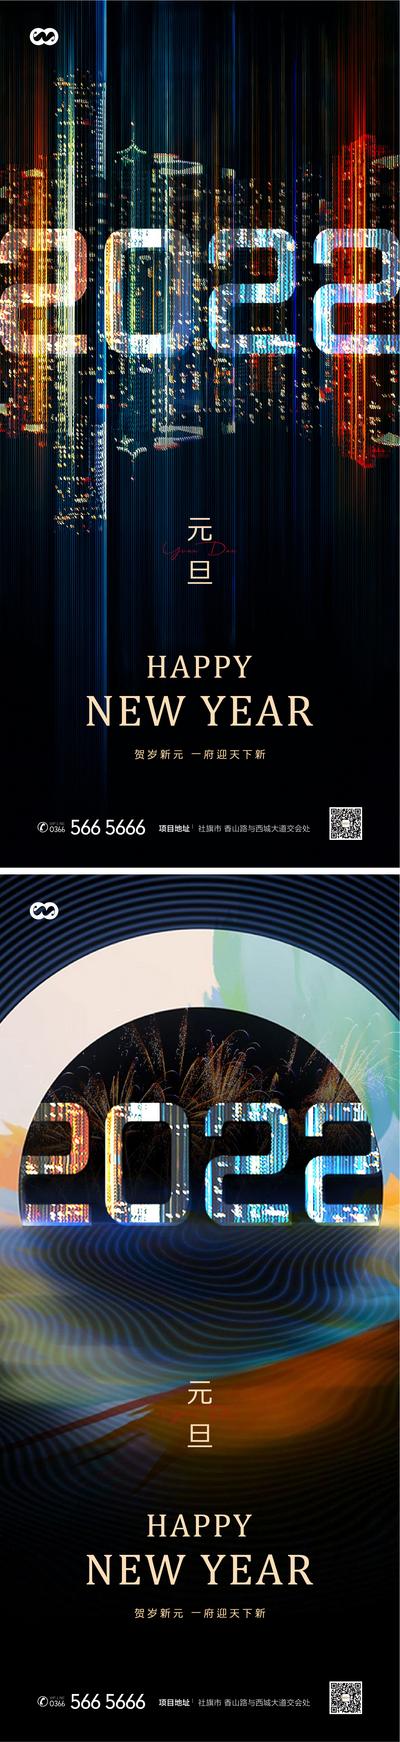 南门网 海报 房地产 中国传统节日 元旦 时尚 简约 烟花 系列